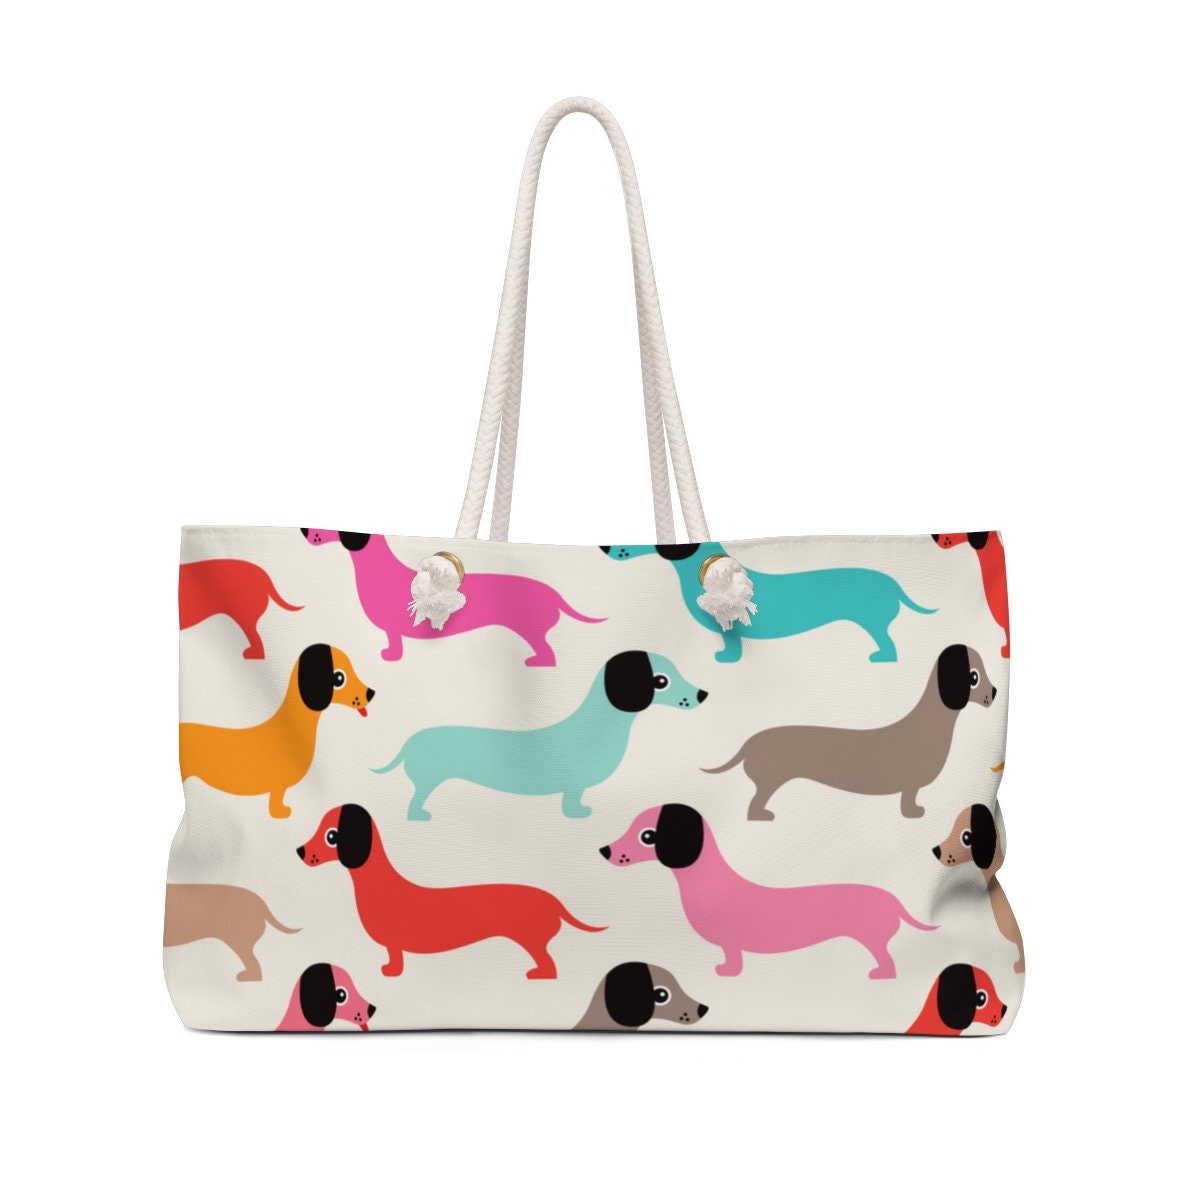 Hunde-Print-Tasche, Hunde-Strandtaschen, Wochenendtasche, große Einkaufstasche, Hunde-Muster-Print-Tasche, Geschenke für sie, große Tasche, große Einkaufstasche, Wiener Hunde-Print